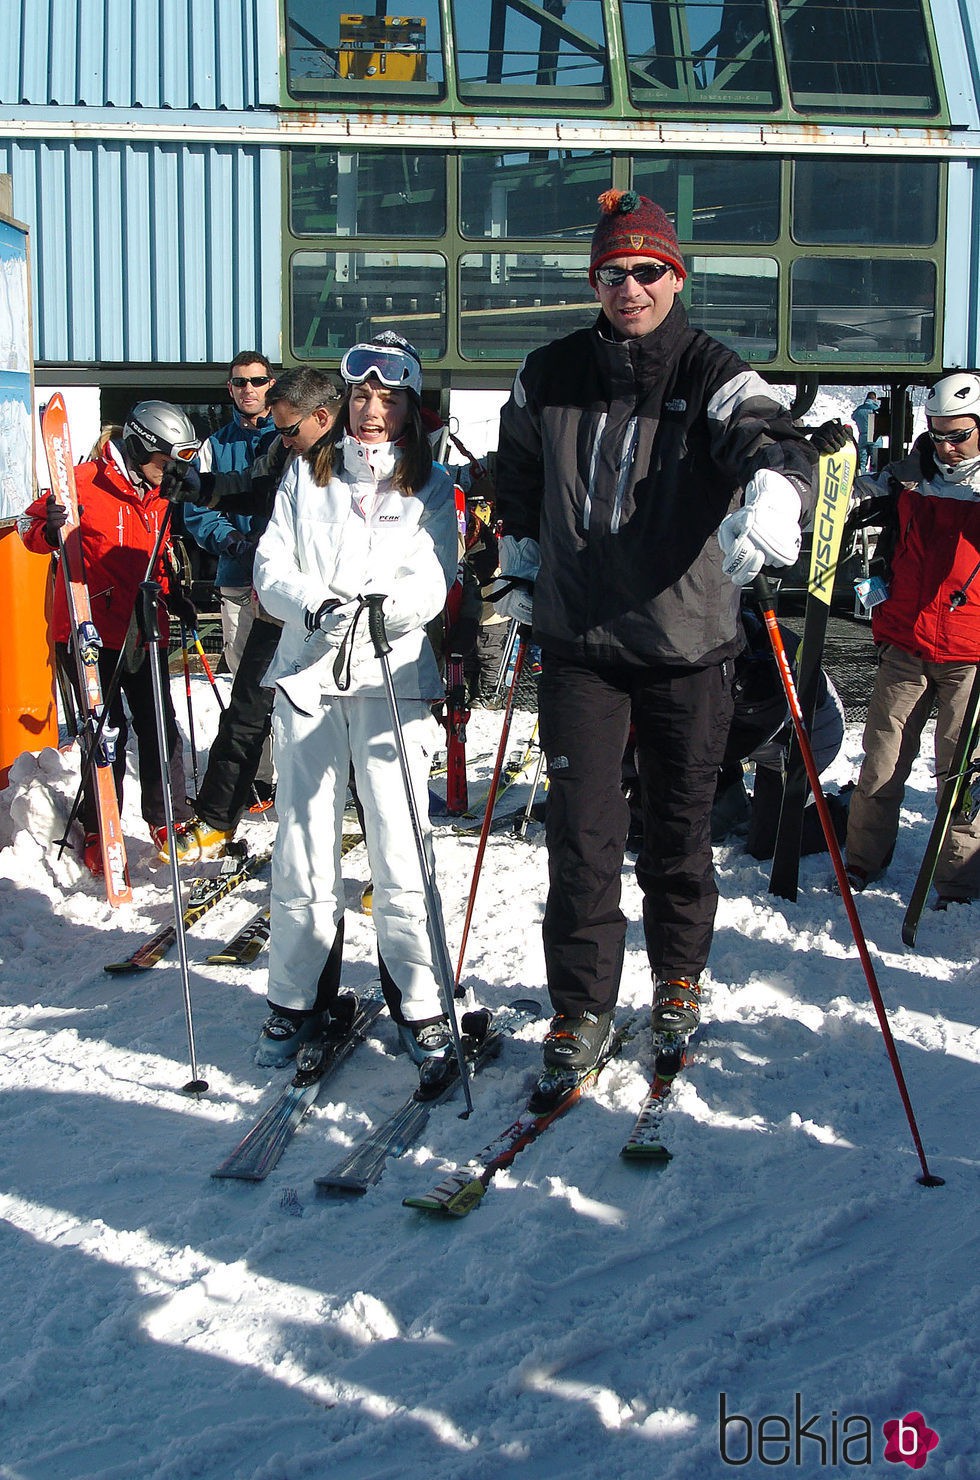 Los Reyes Felipe y Letizia esquiando en Baqueira Beret